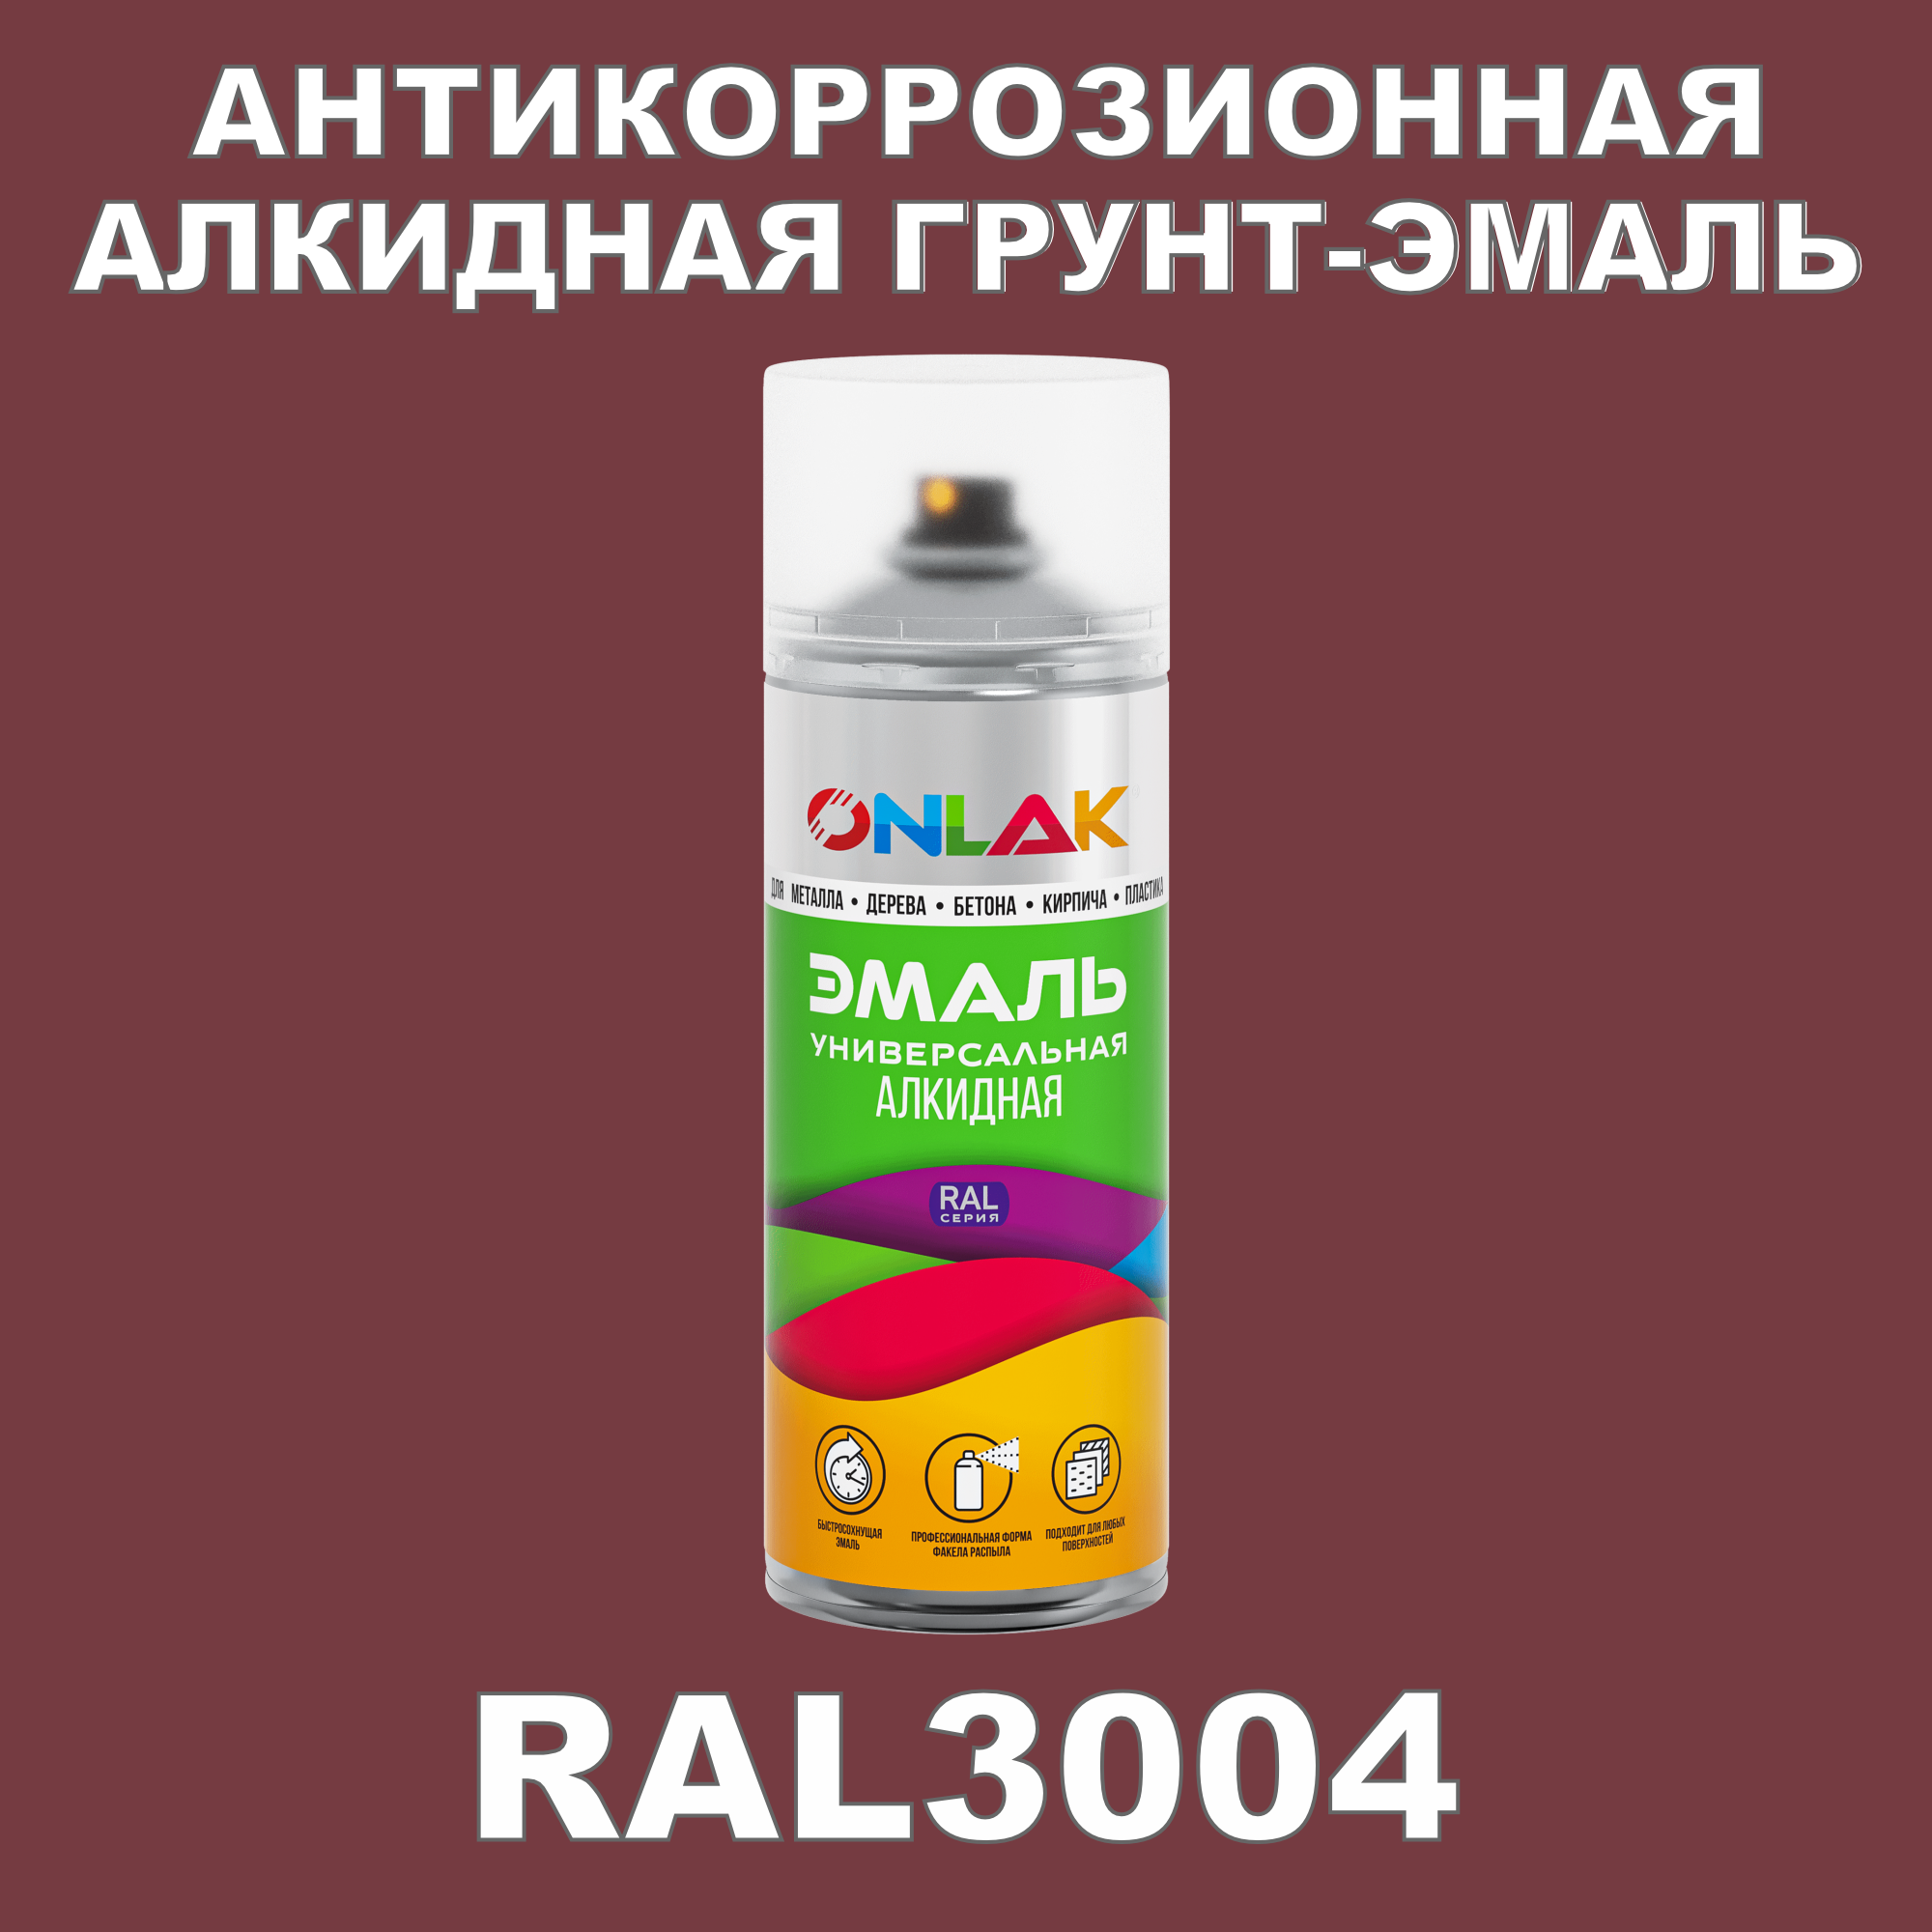 Антикоррозионная грунт-эмаль ONLAK RAL3004 полуматовая для металла и защиты от ржавчины антикоррозионная грунт эмаль onlak ral3004 матовая для металла и защиты от ржавчины